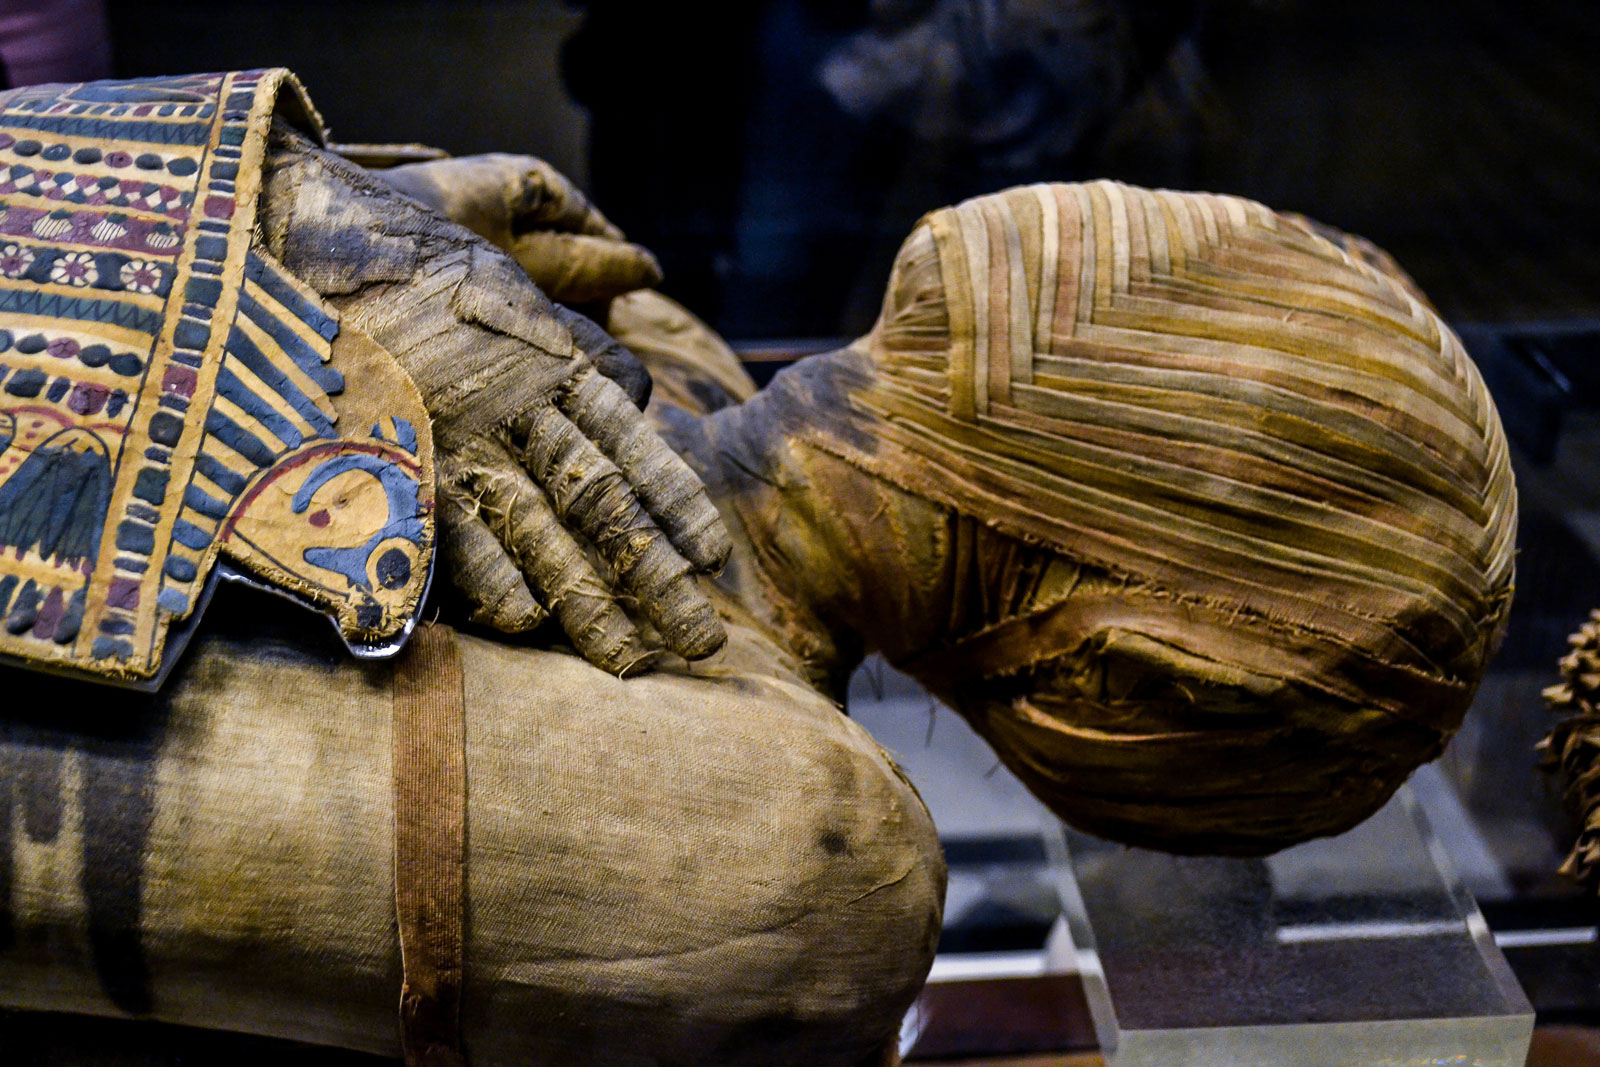 Nghệ thuật thất truyền: Người Ai Cập ướp xác người đã khuất như thế nào - Ảnh 3.